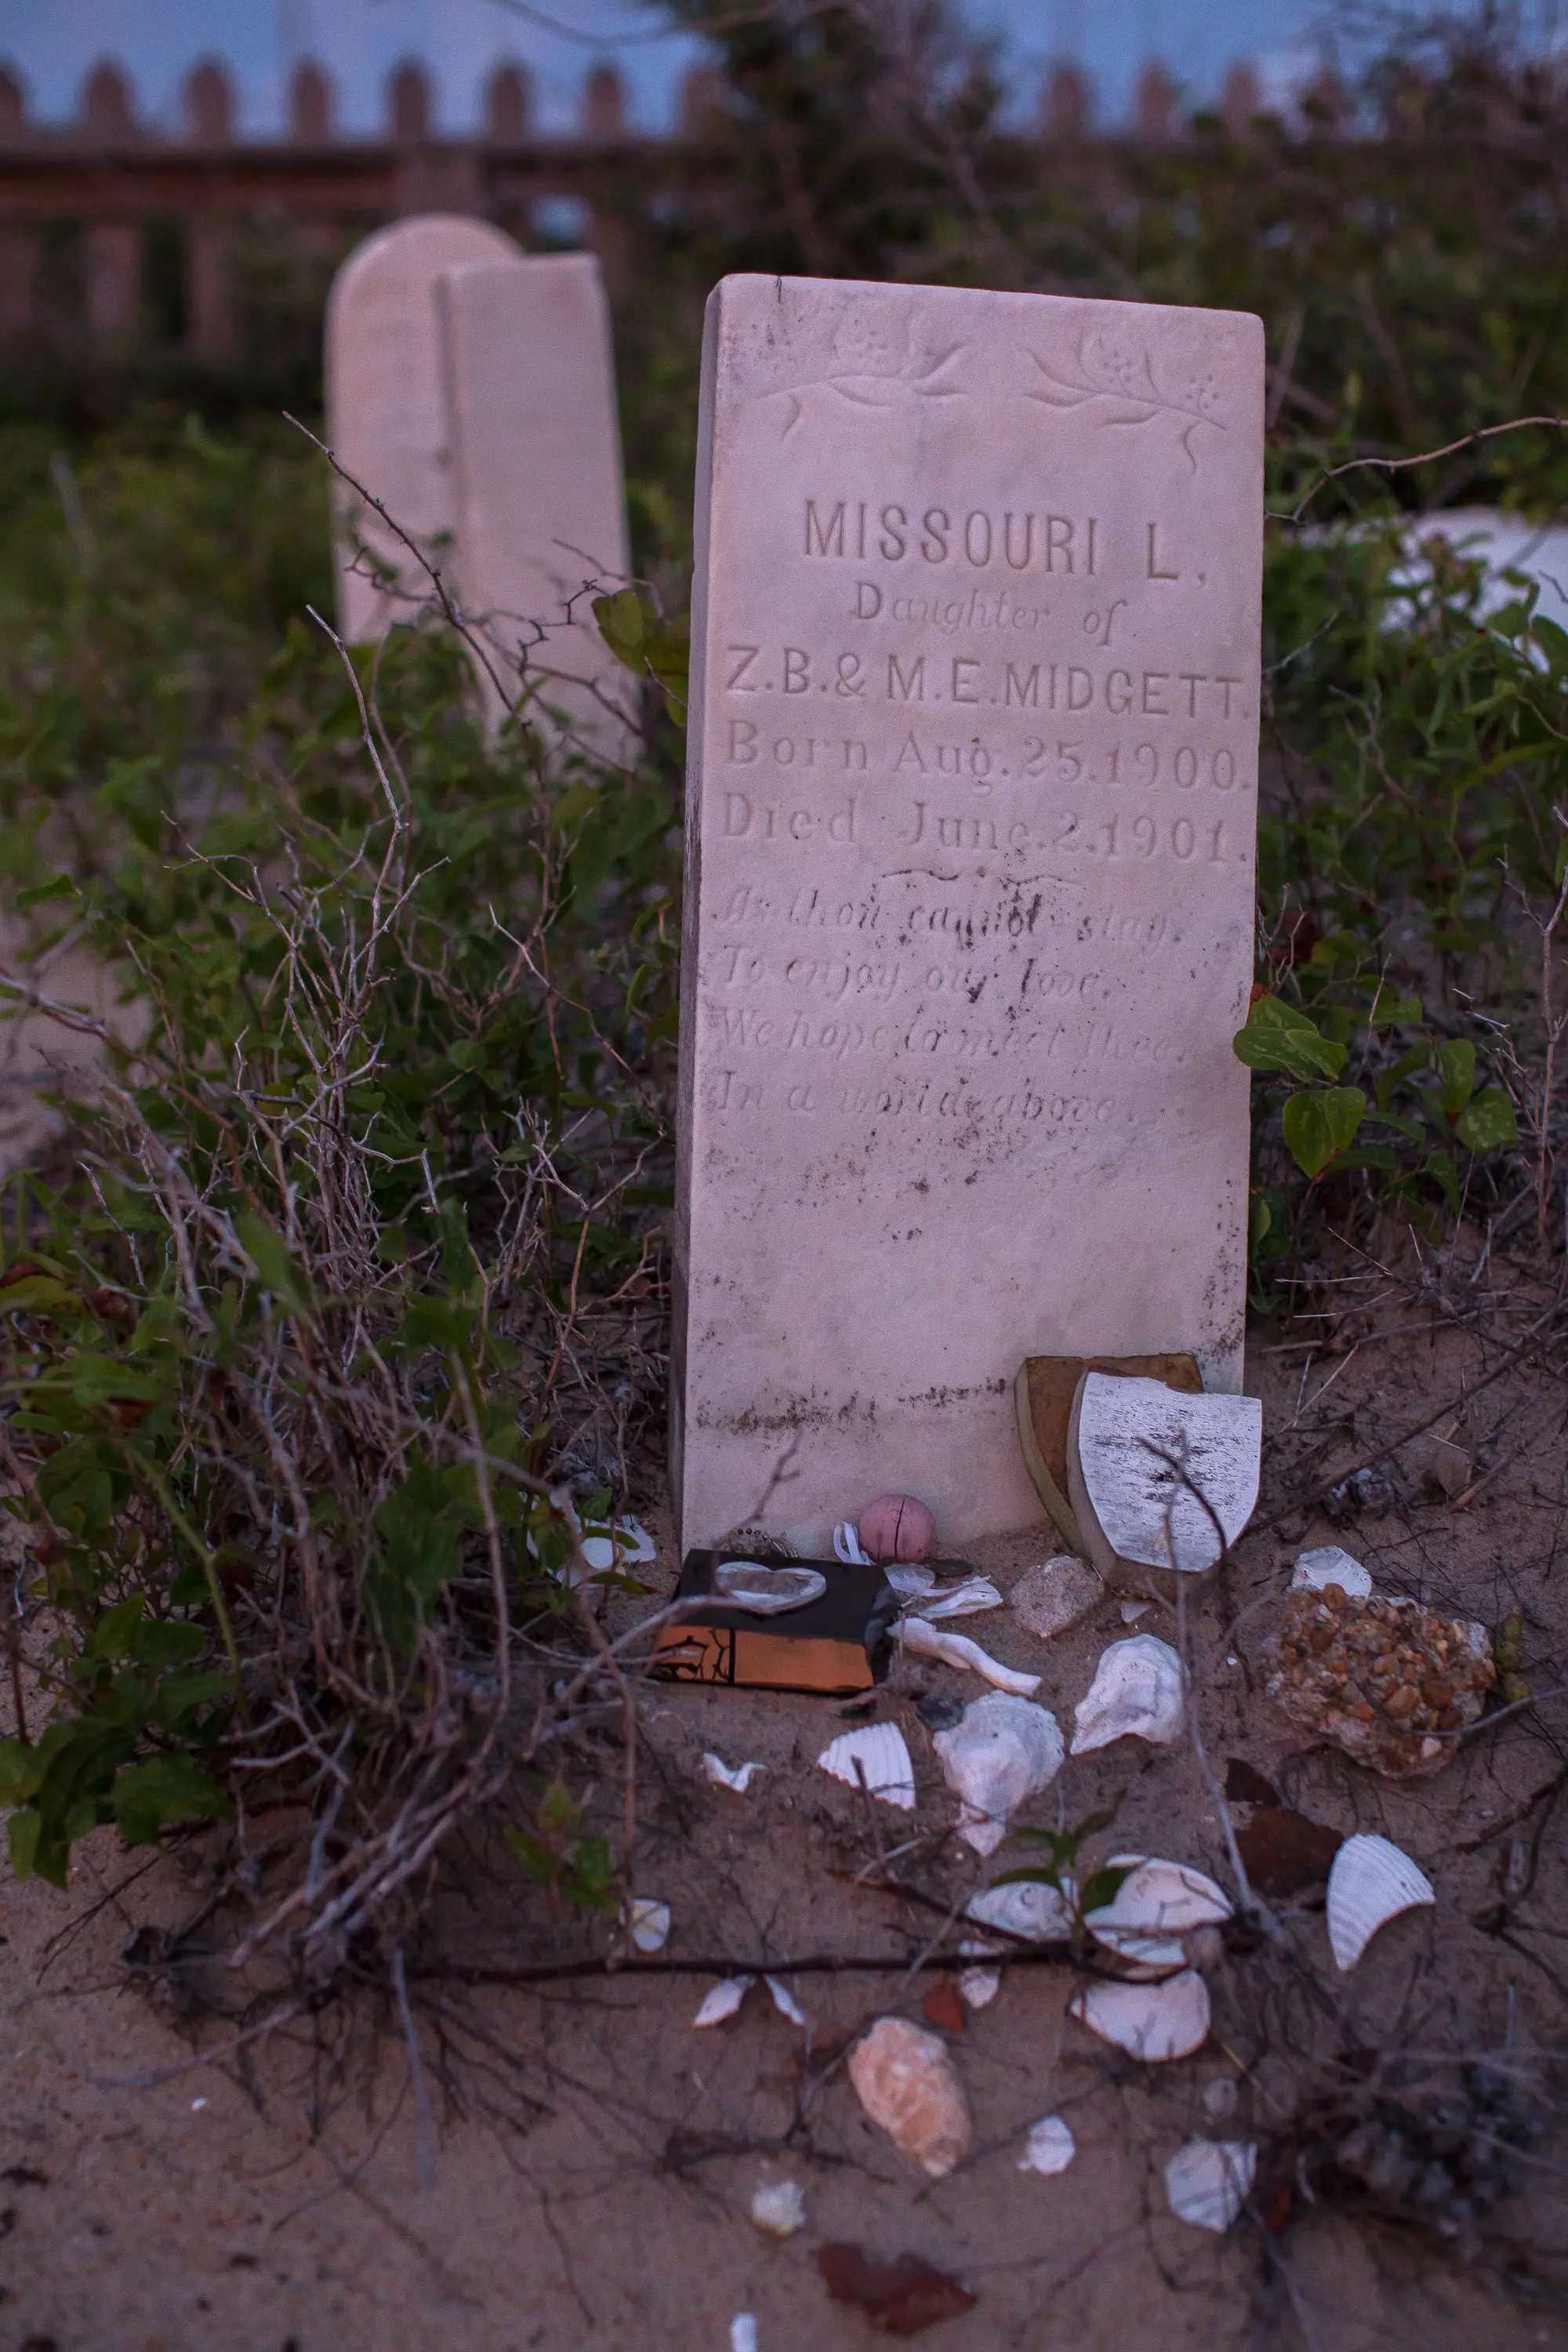 People leave tributes on grave of Missouri Midgett